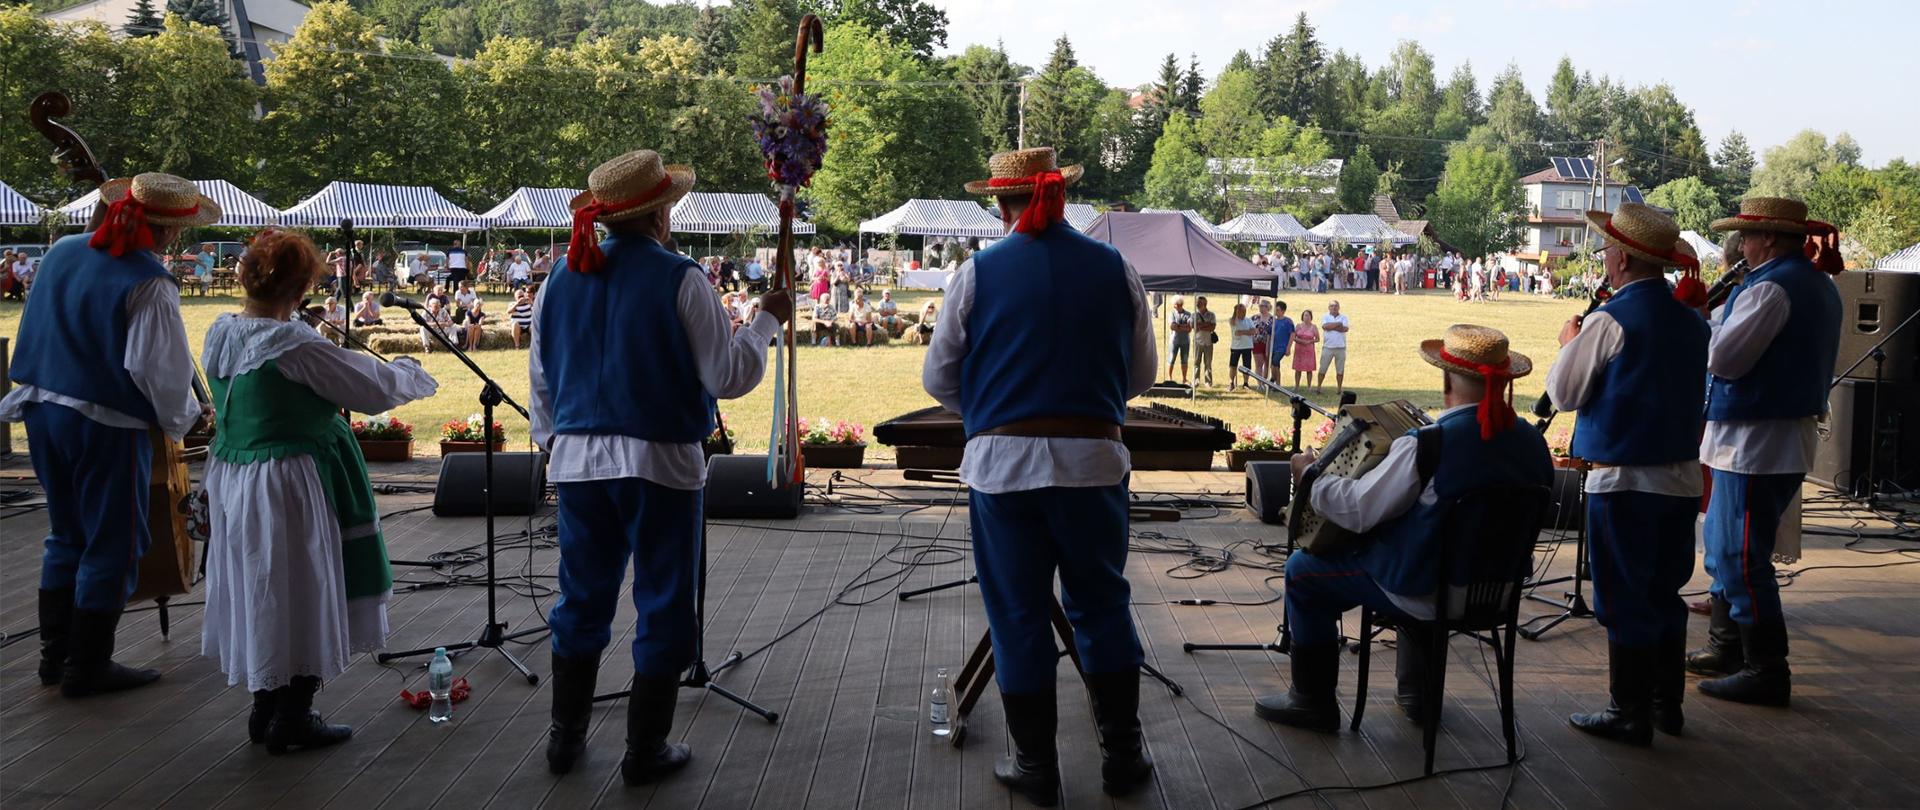 XVIII Międzynarodowy Festiwal Folkloru Karpat w Trzcinicy